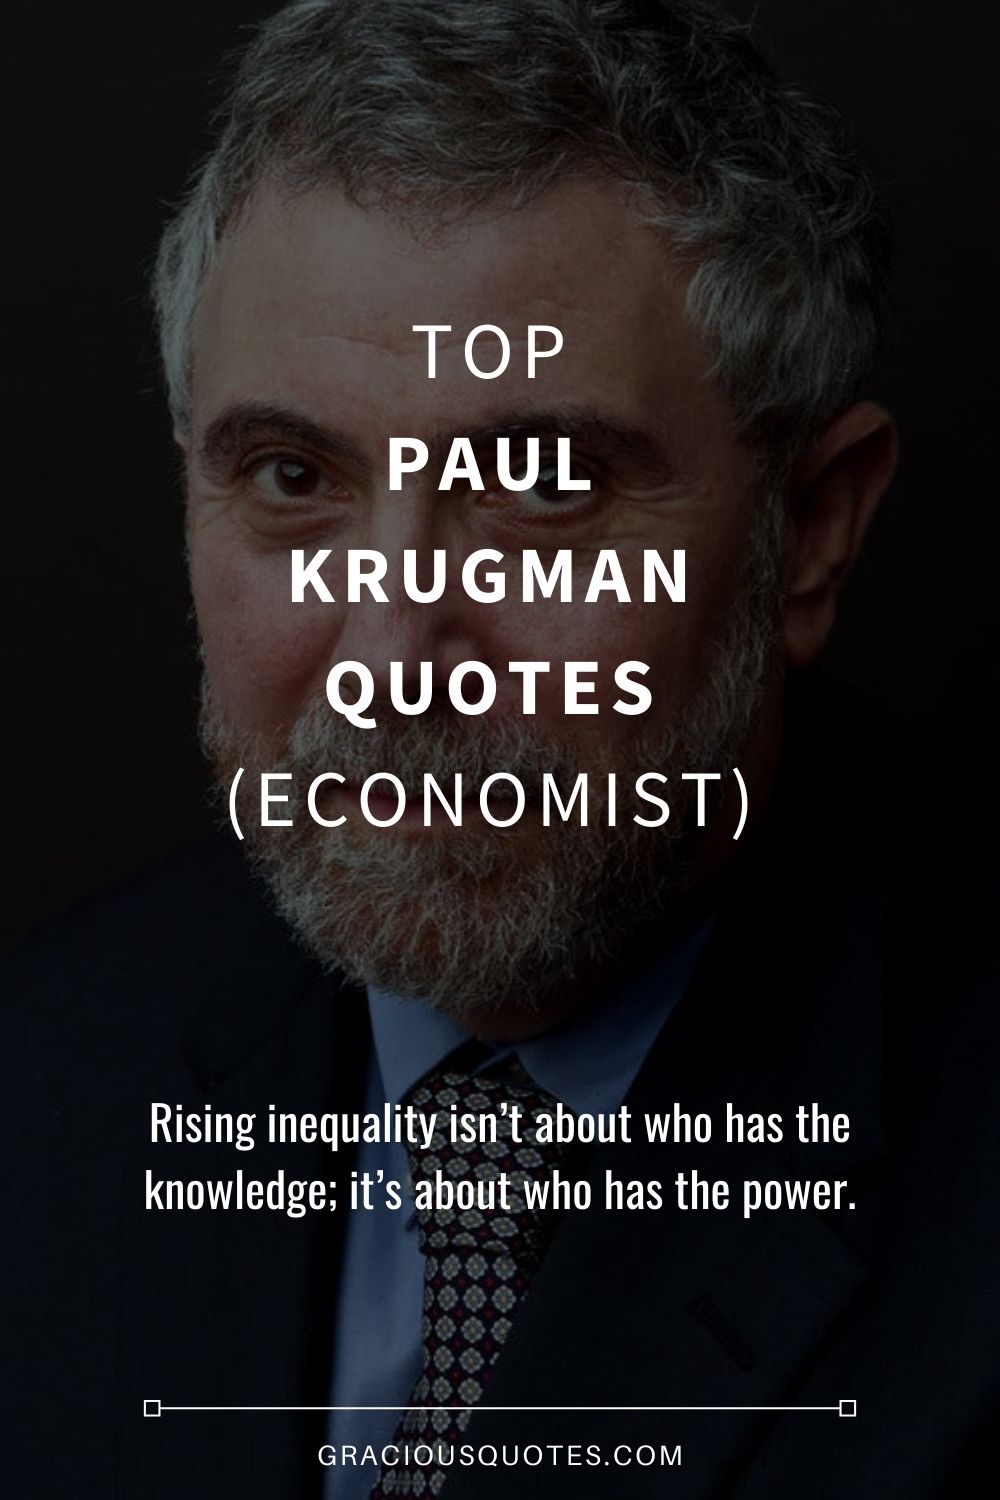 Top Paul Krugman Quotes (ECONOMIST) - Gracious Quotes